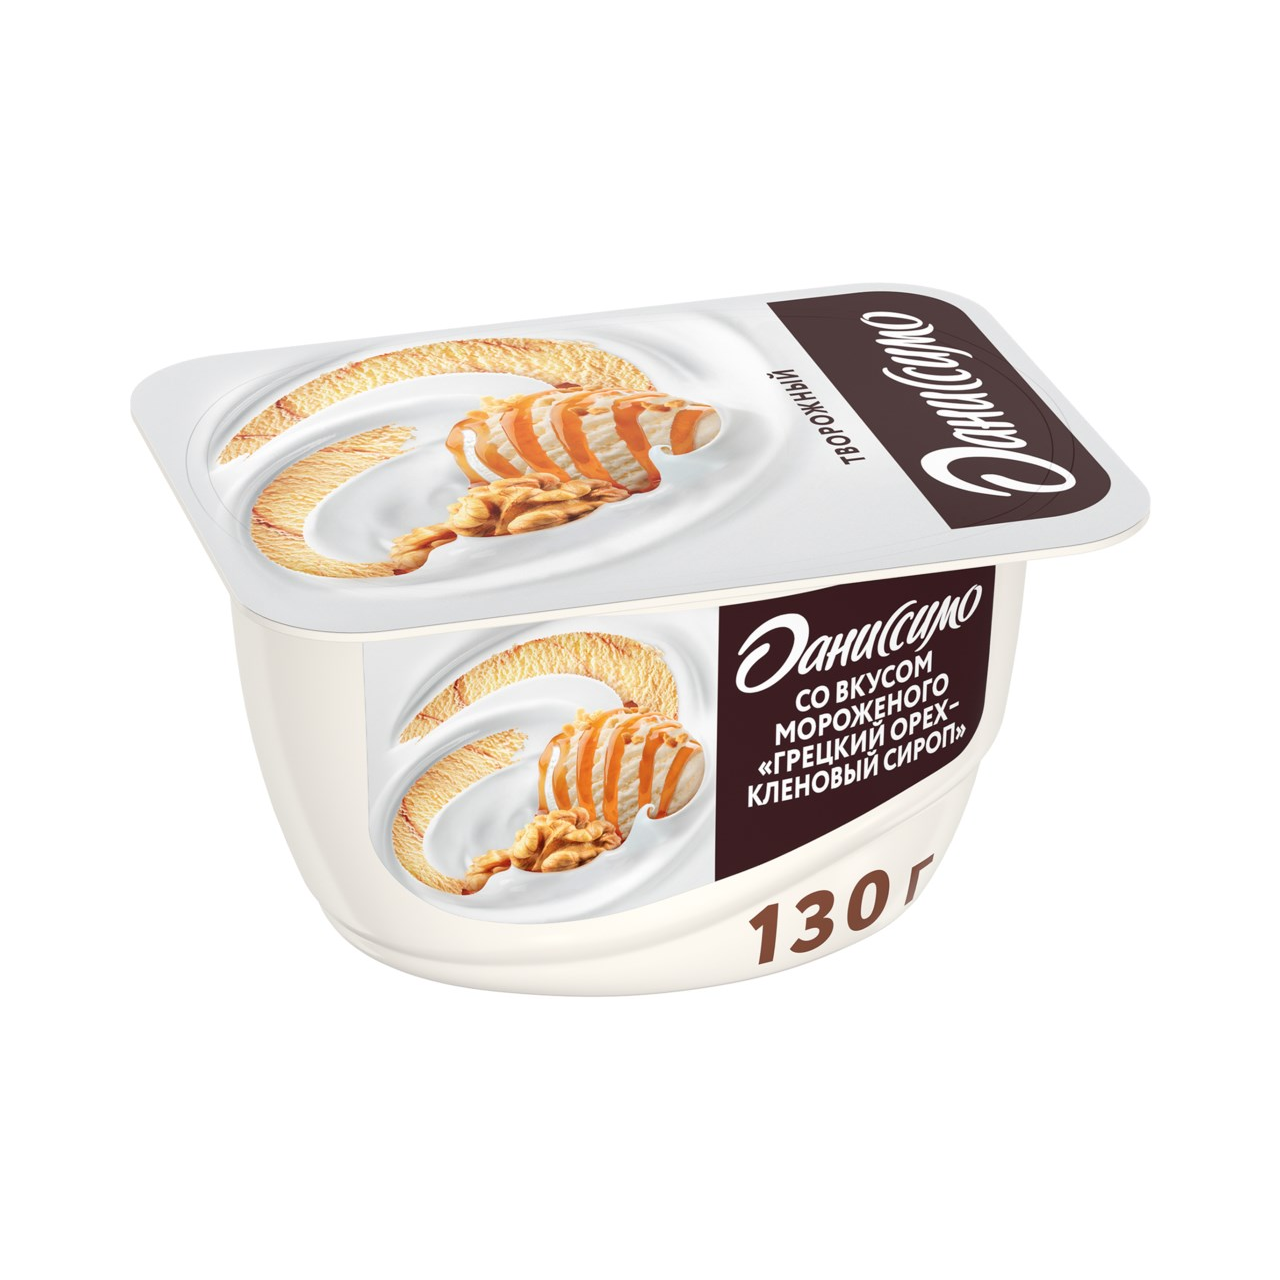 Творожный продукт Даниссимо 5,5% 130 г мороженое грецкий орех/кленовый сироп